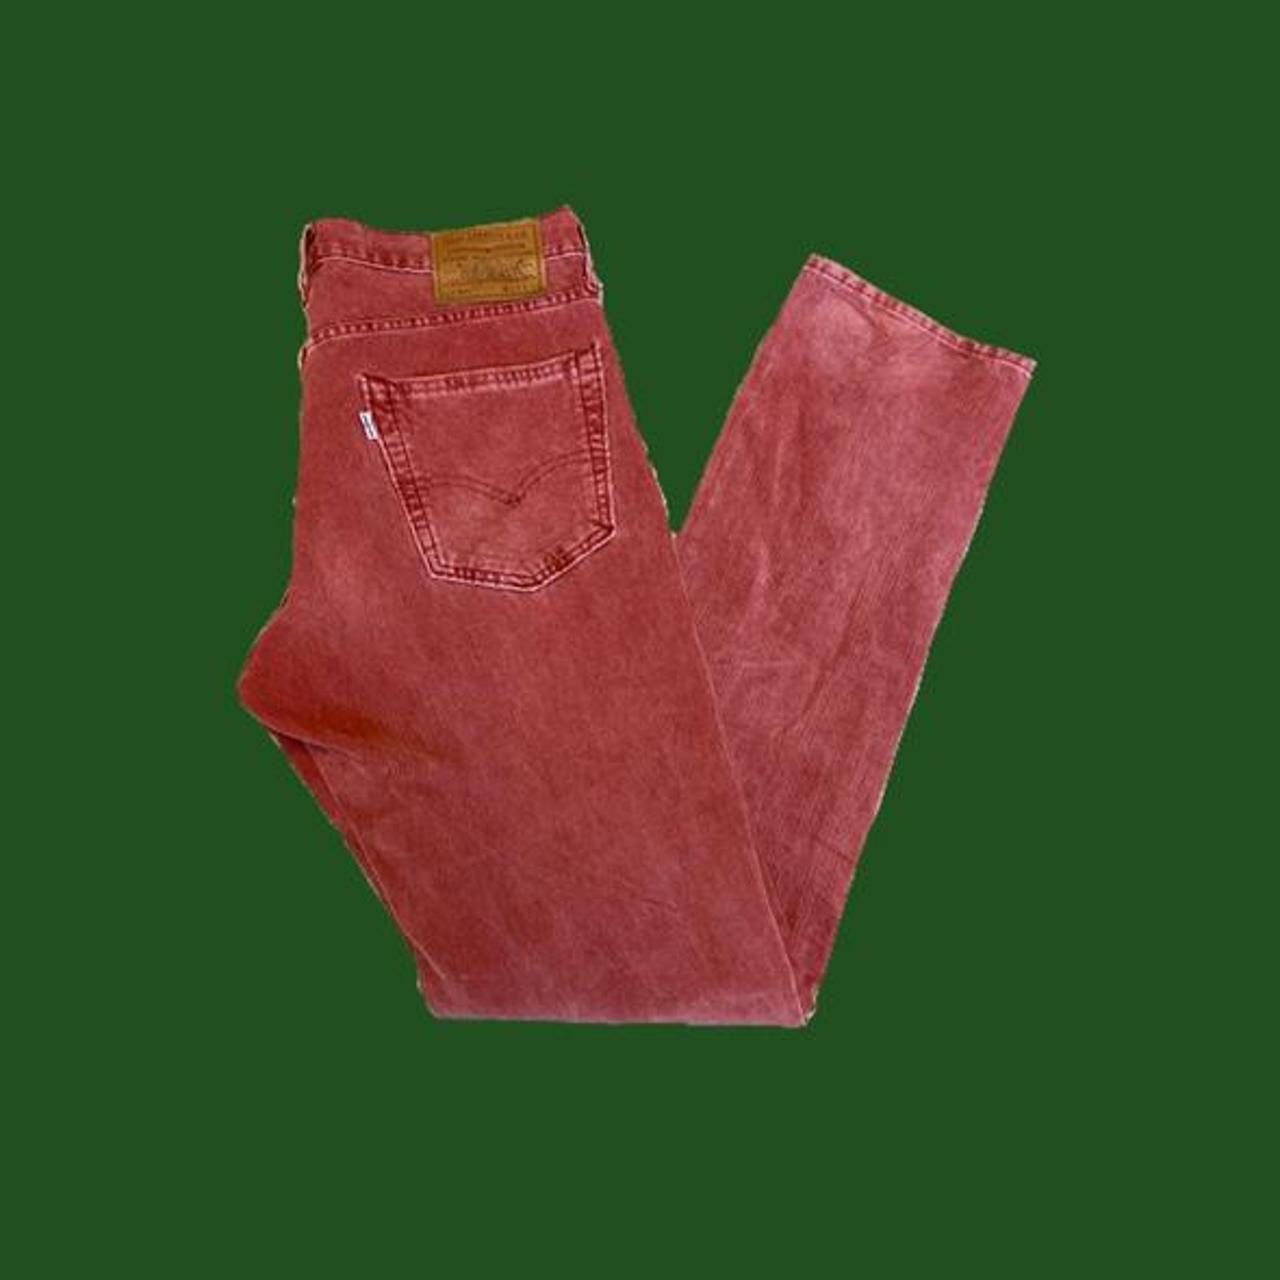 Levis Khaki Trousers - Buy Levis Khaki Trousers online in India